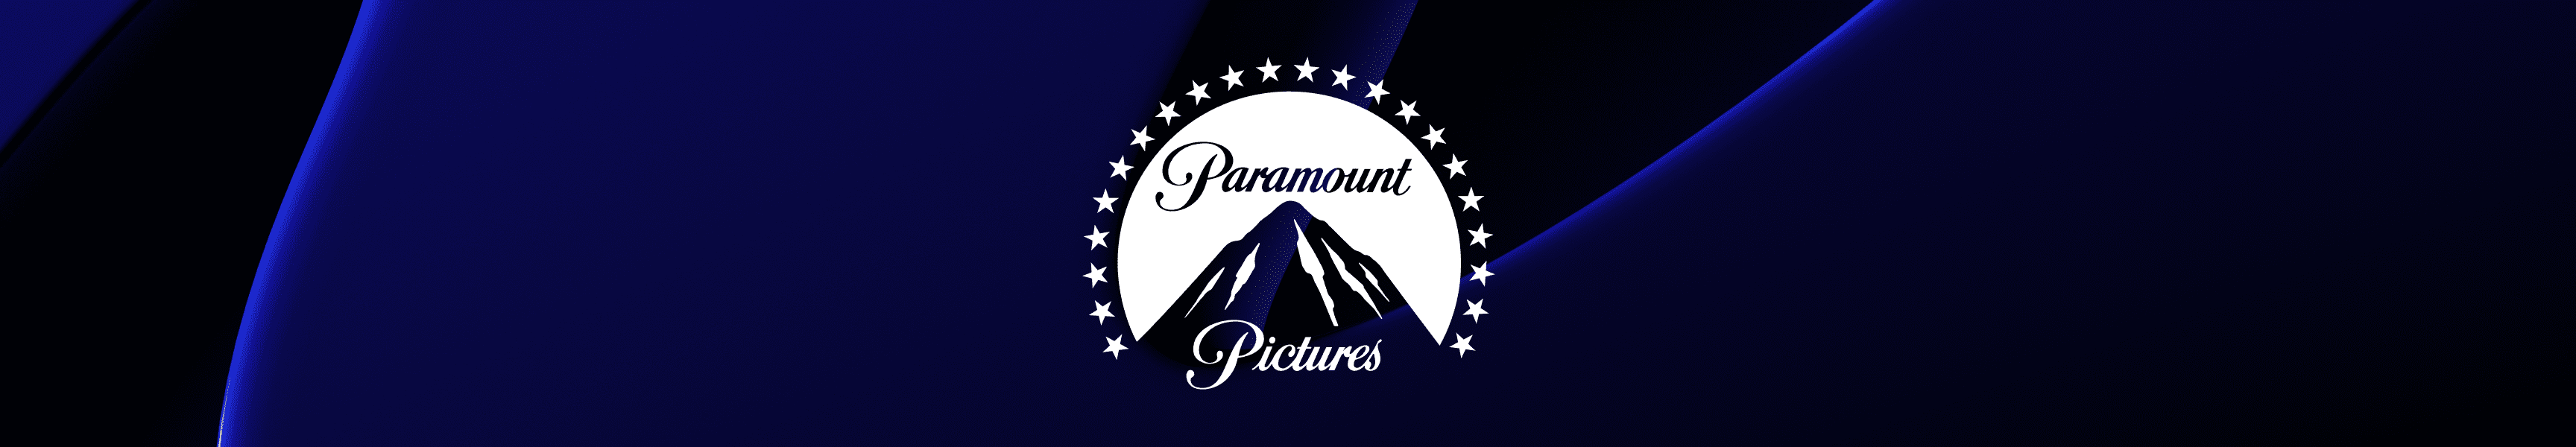 Paramount Pictures Tassen